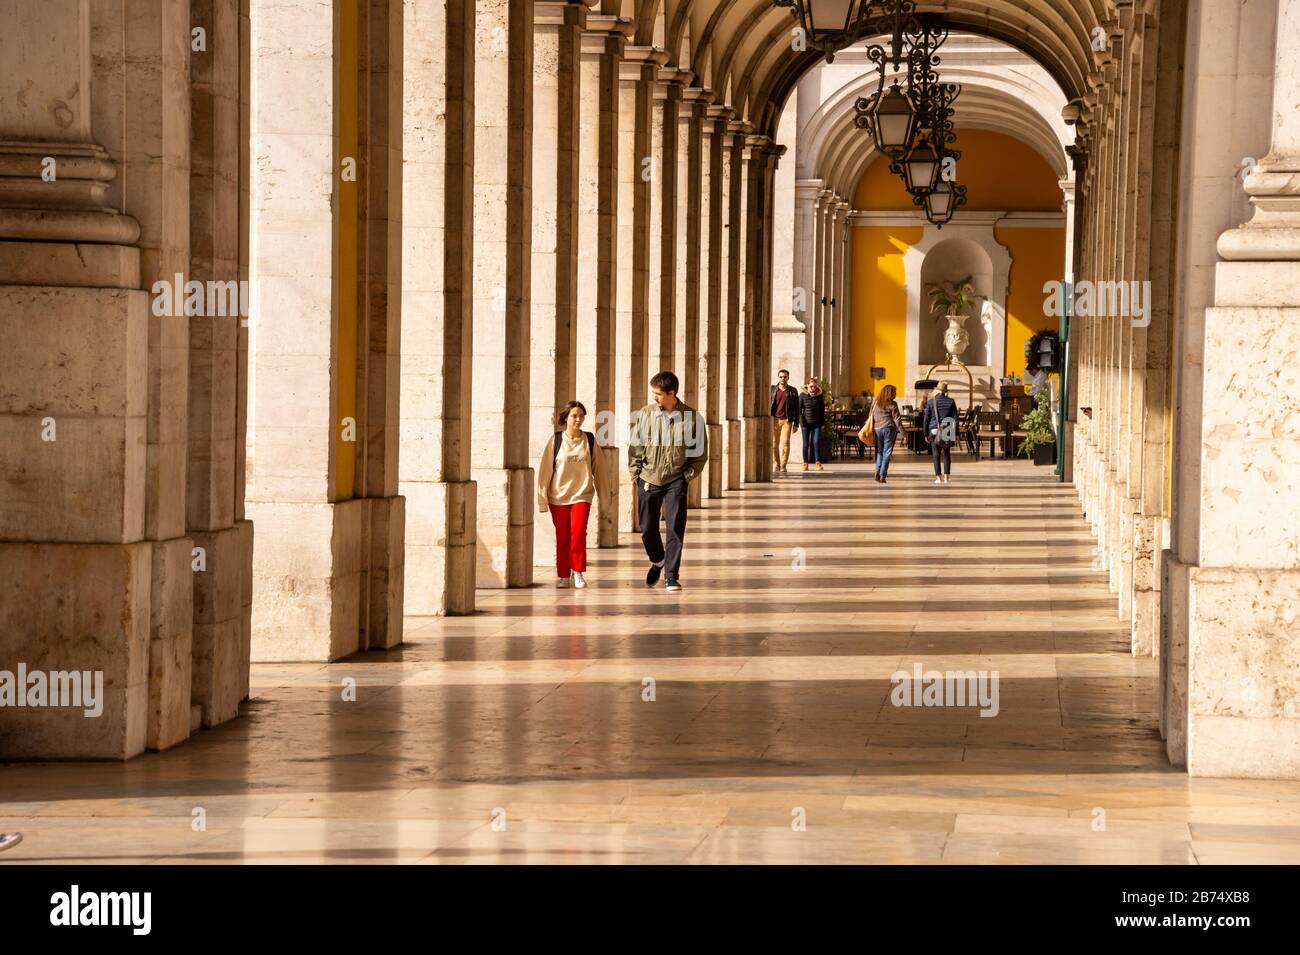 Lisbona, Portogallo - 2 marzo 2020: Pedoni che camminano lungo la passerella sotto l'edificio del Ministero della Giustizia vicino all'Arco da Rua Augusta Foto Stock